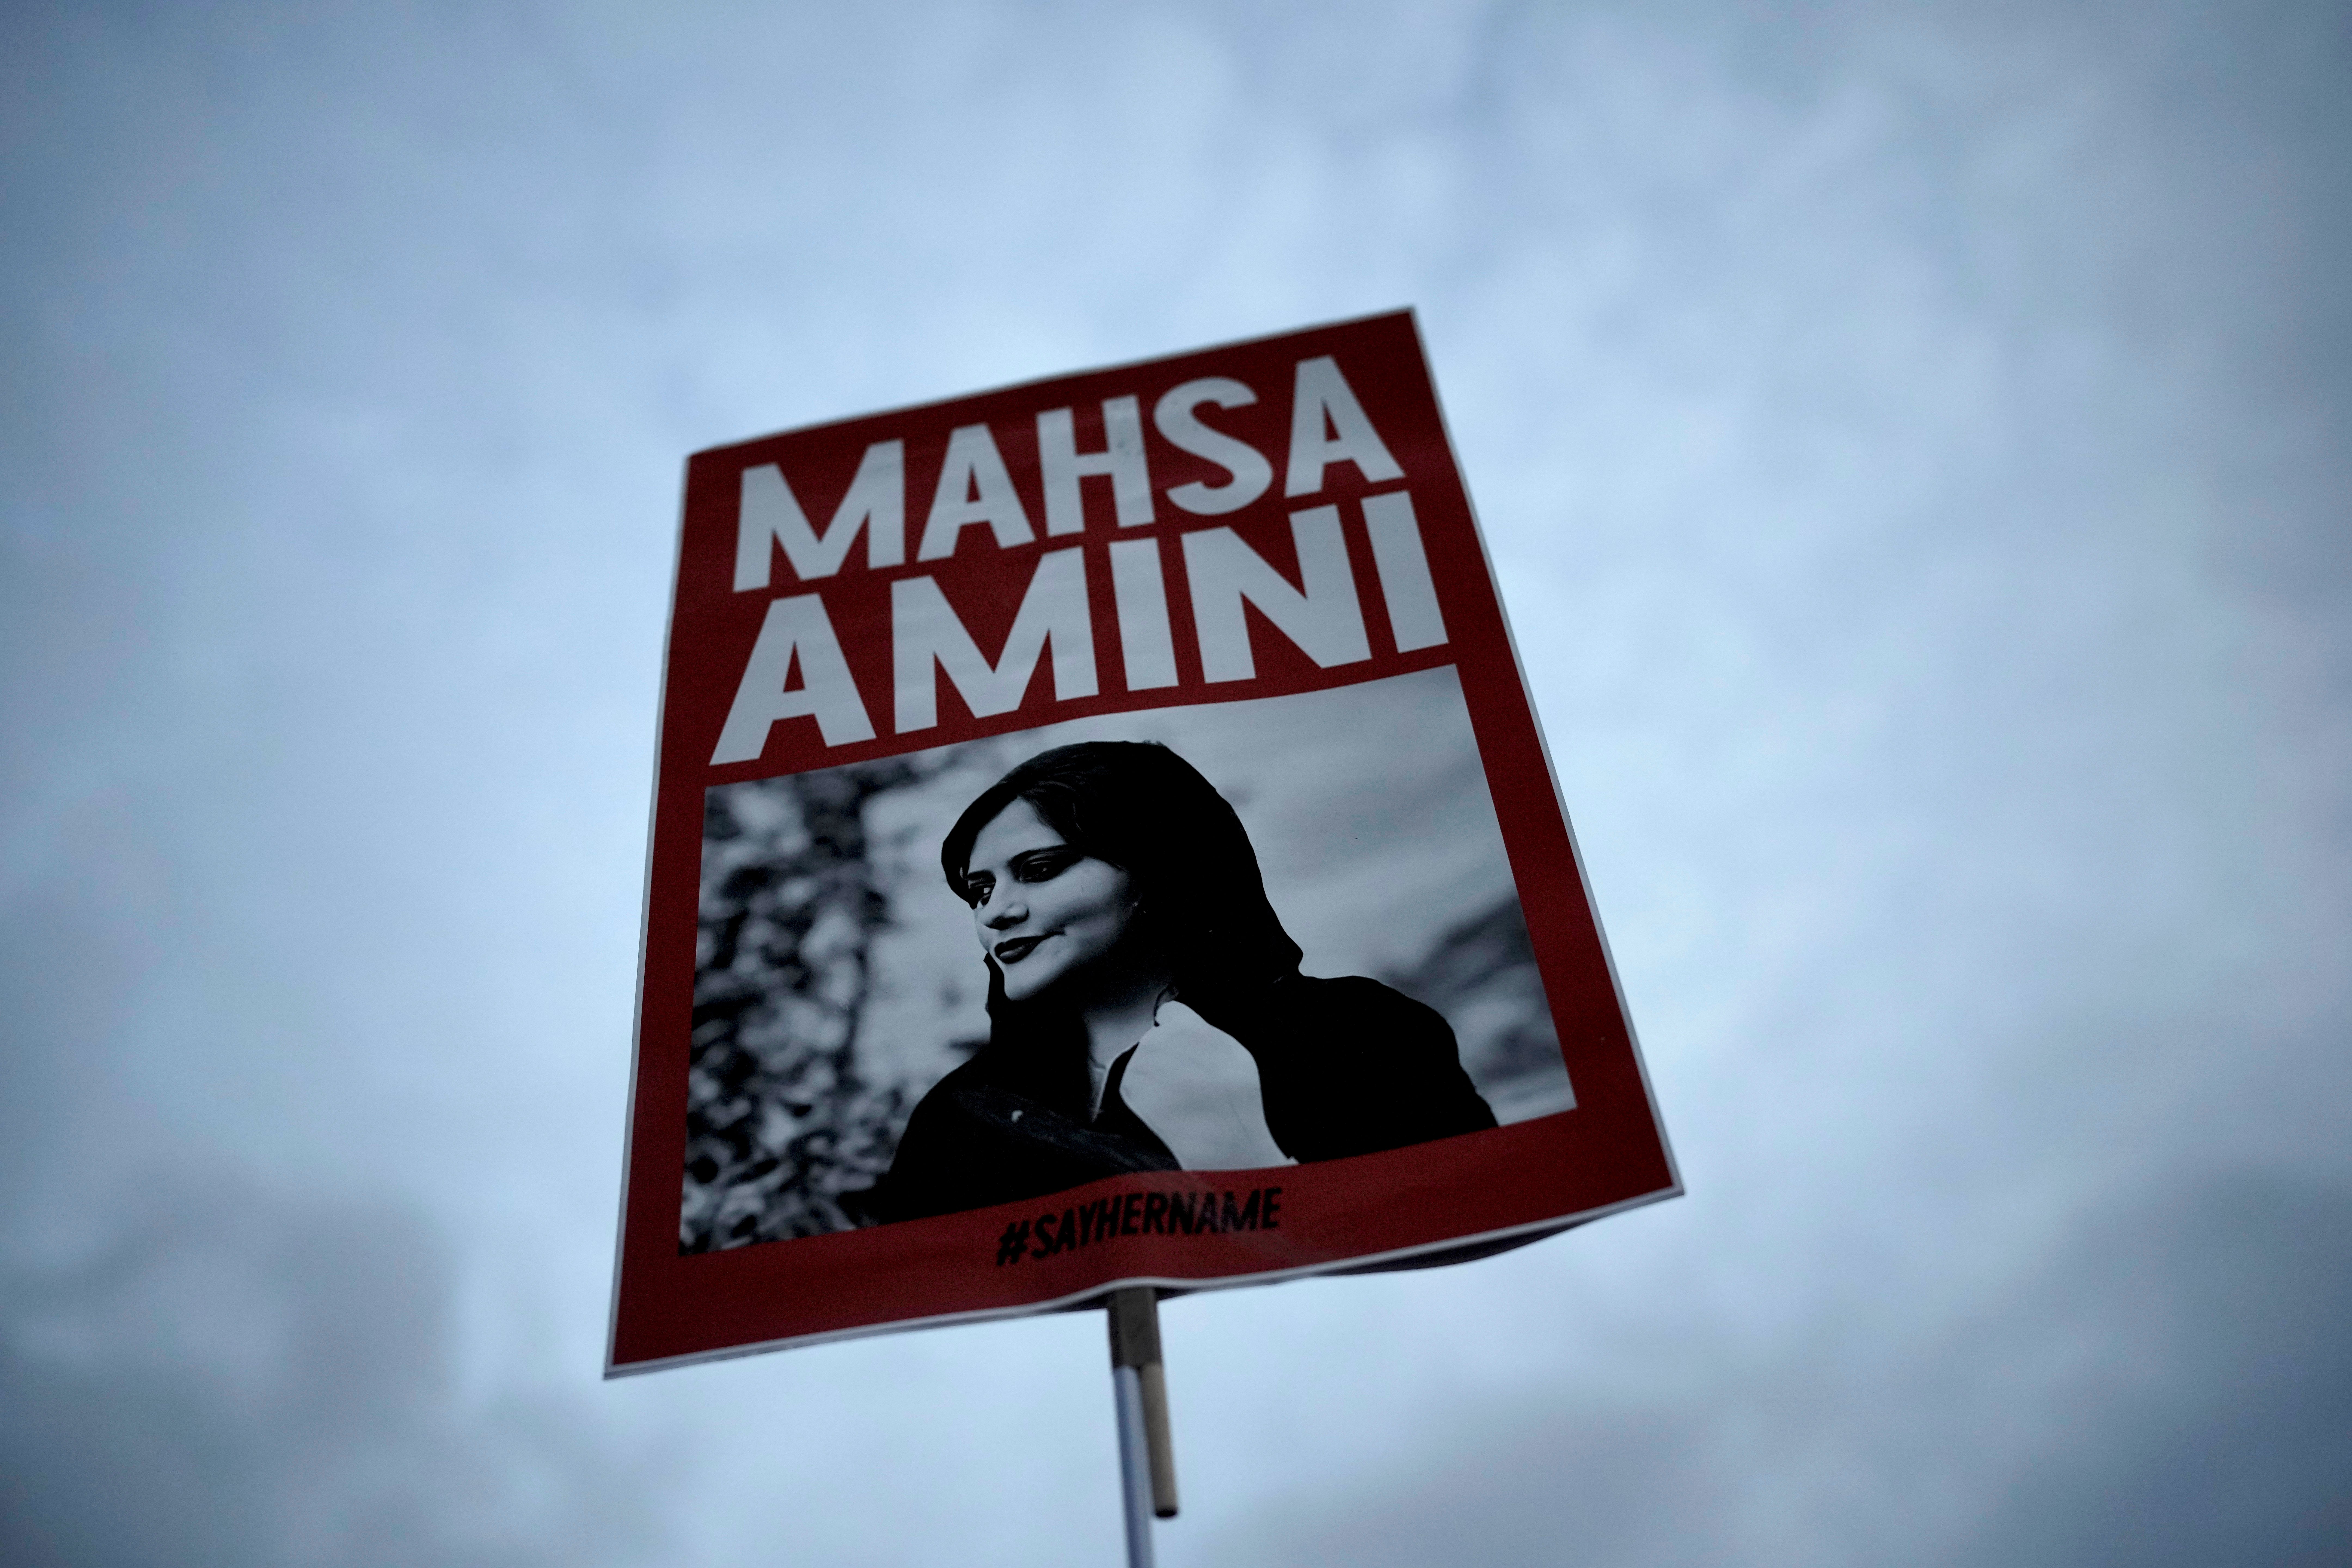 Una mujer sostiene una pancarta con una foto de Mahsa Amini mientras asiste a una protesta en Berlín, Alemania